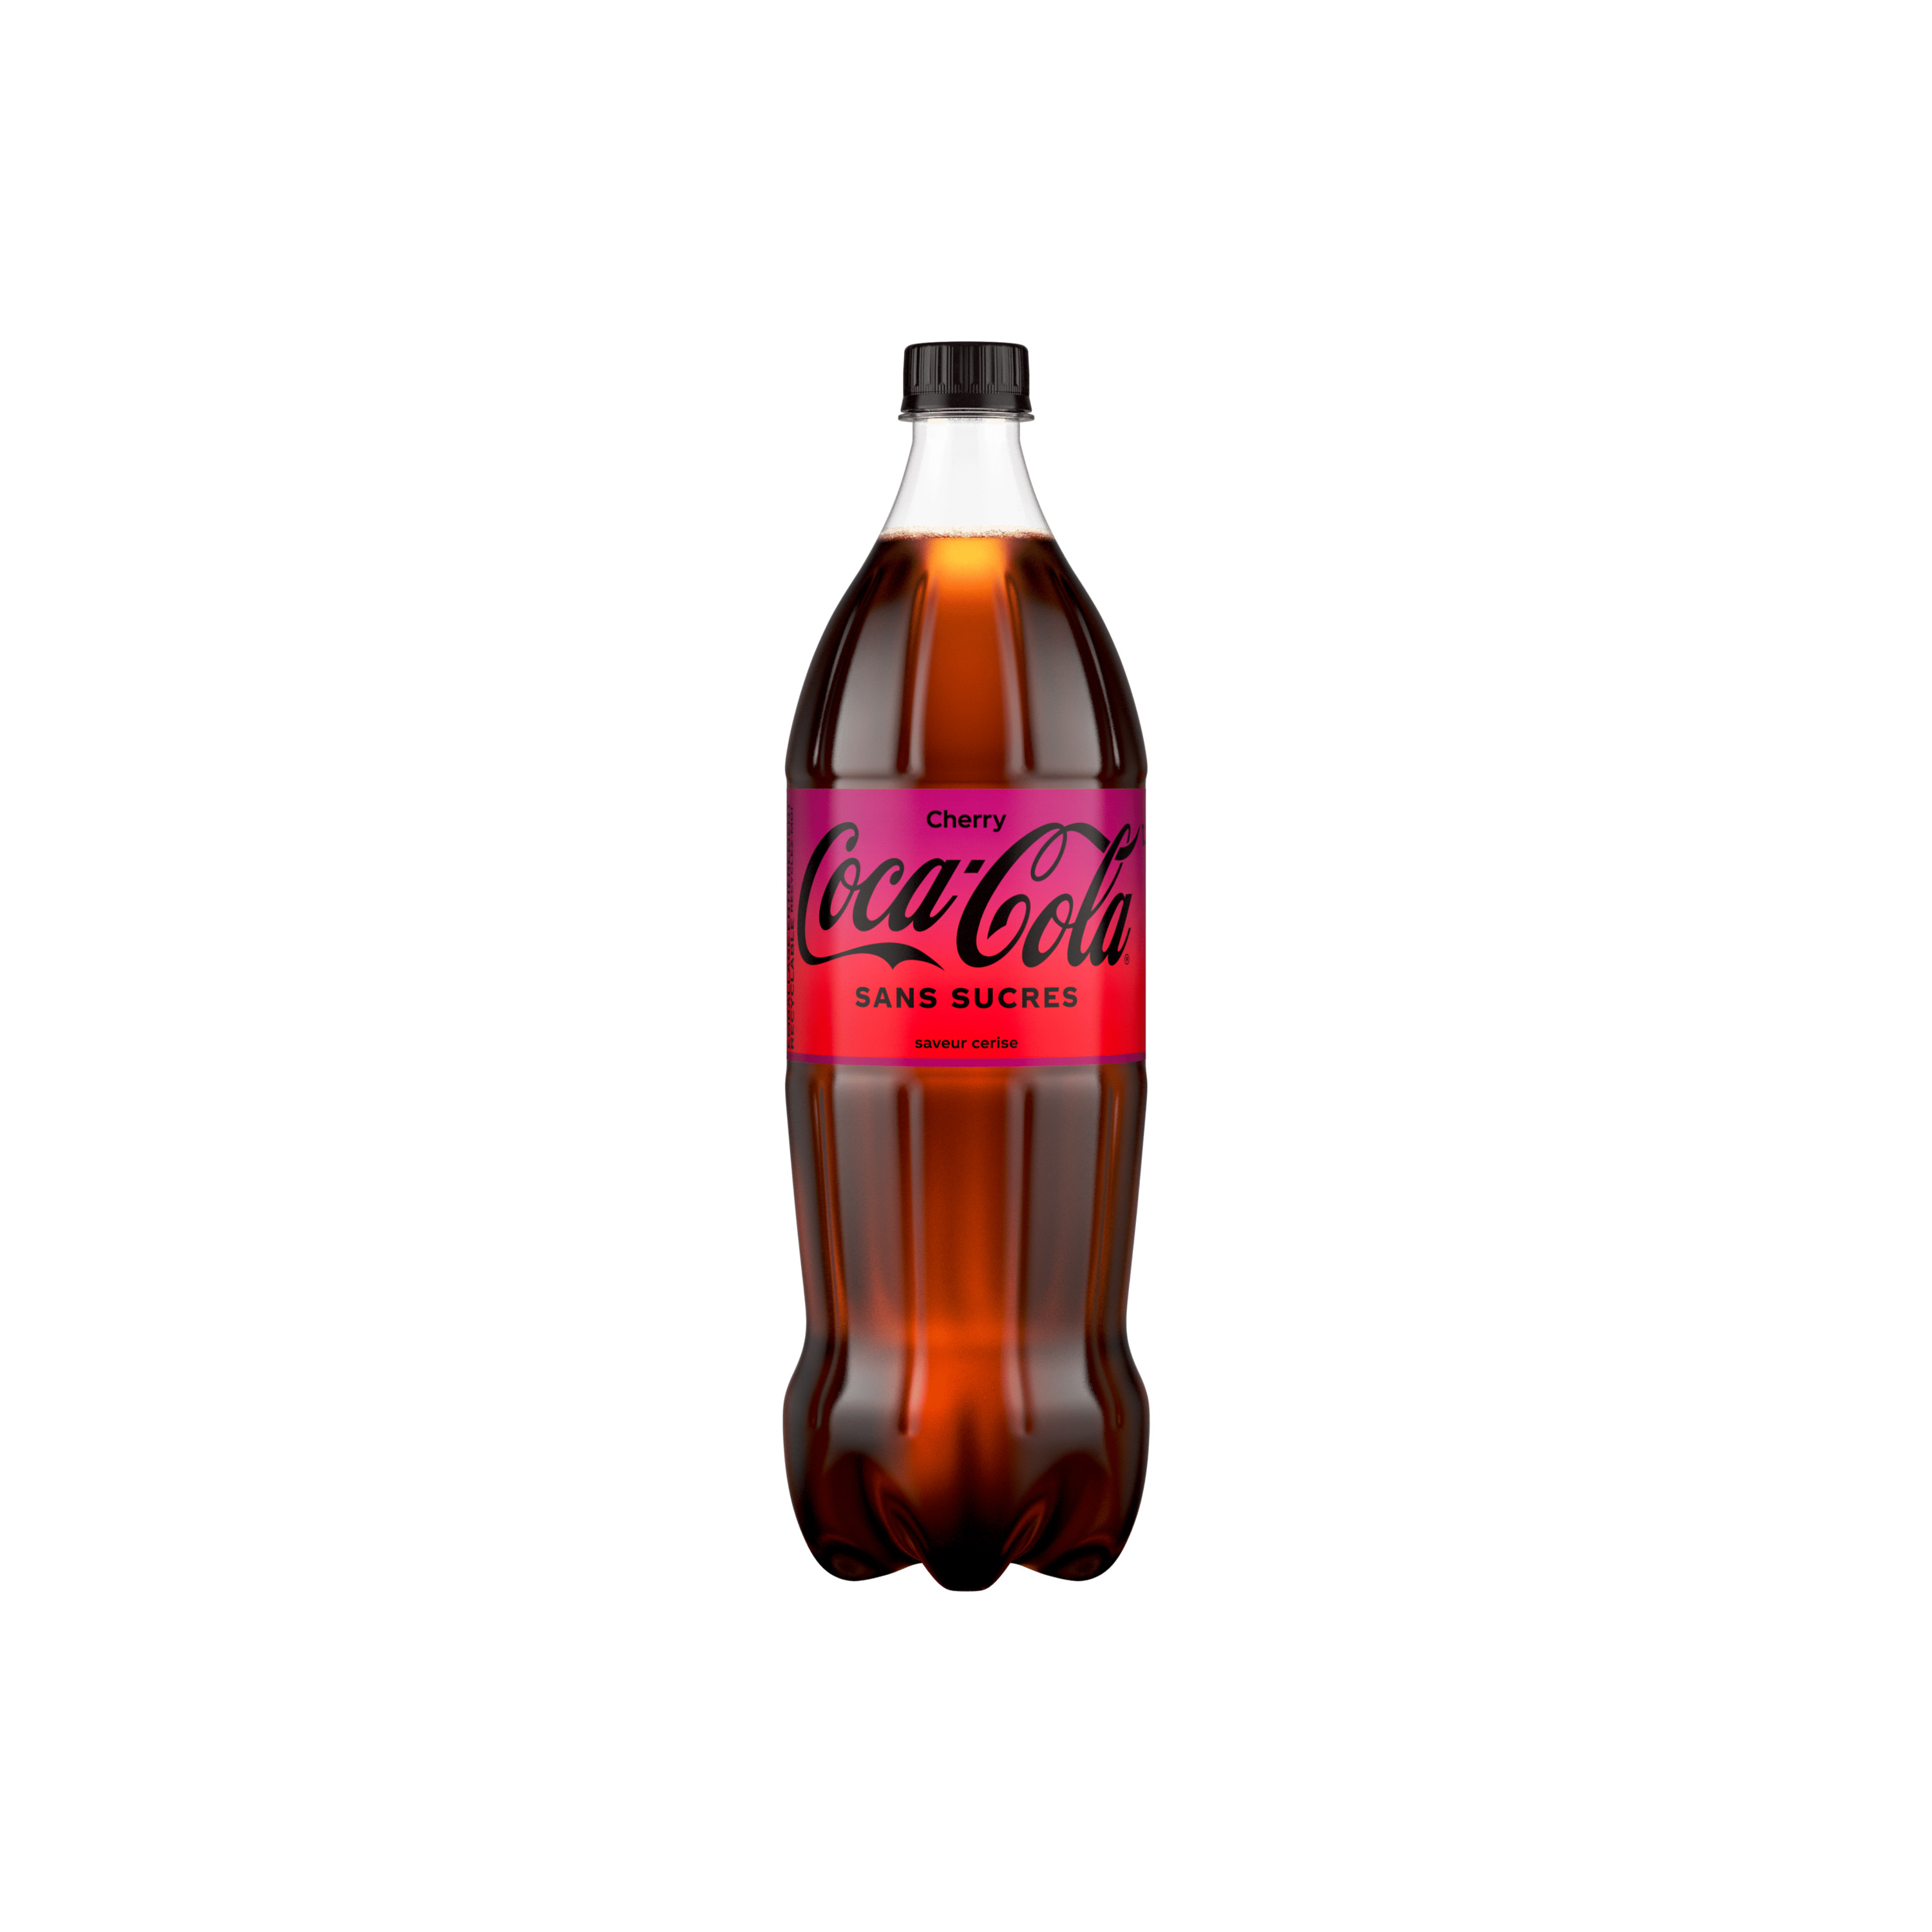 Bouteille de Coca-Cola sans sucres Cherry